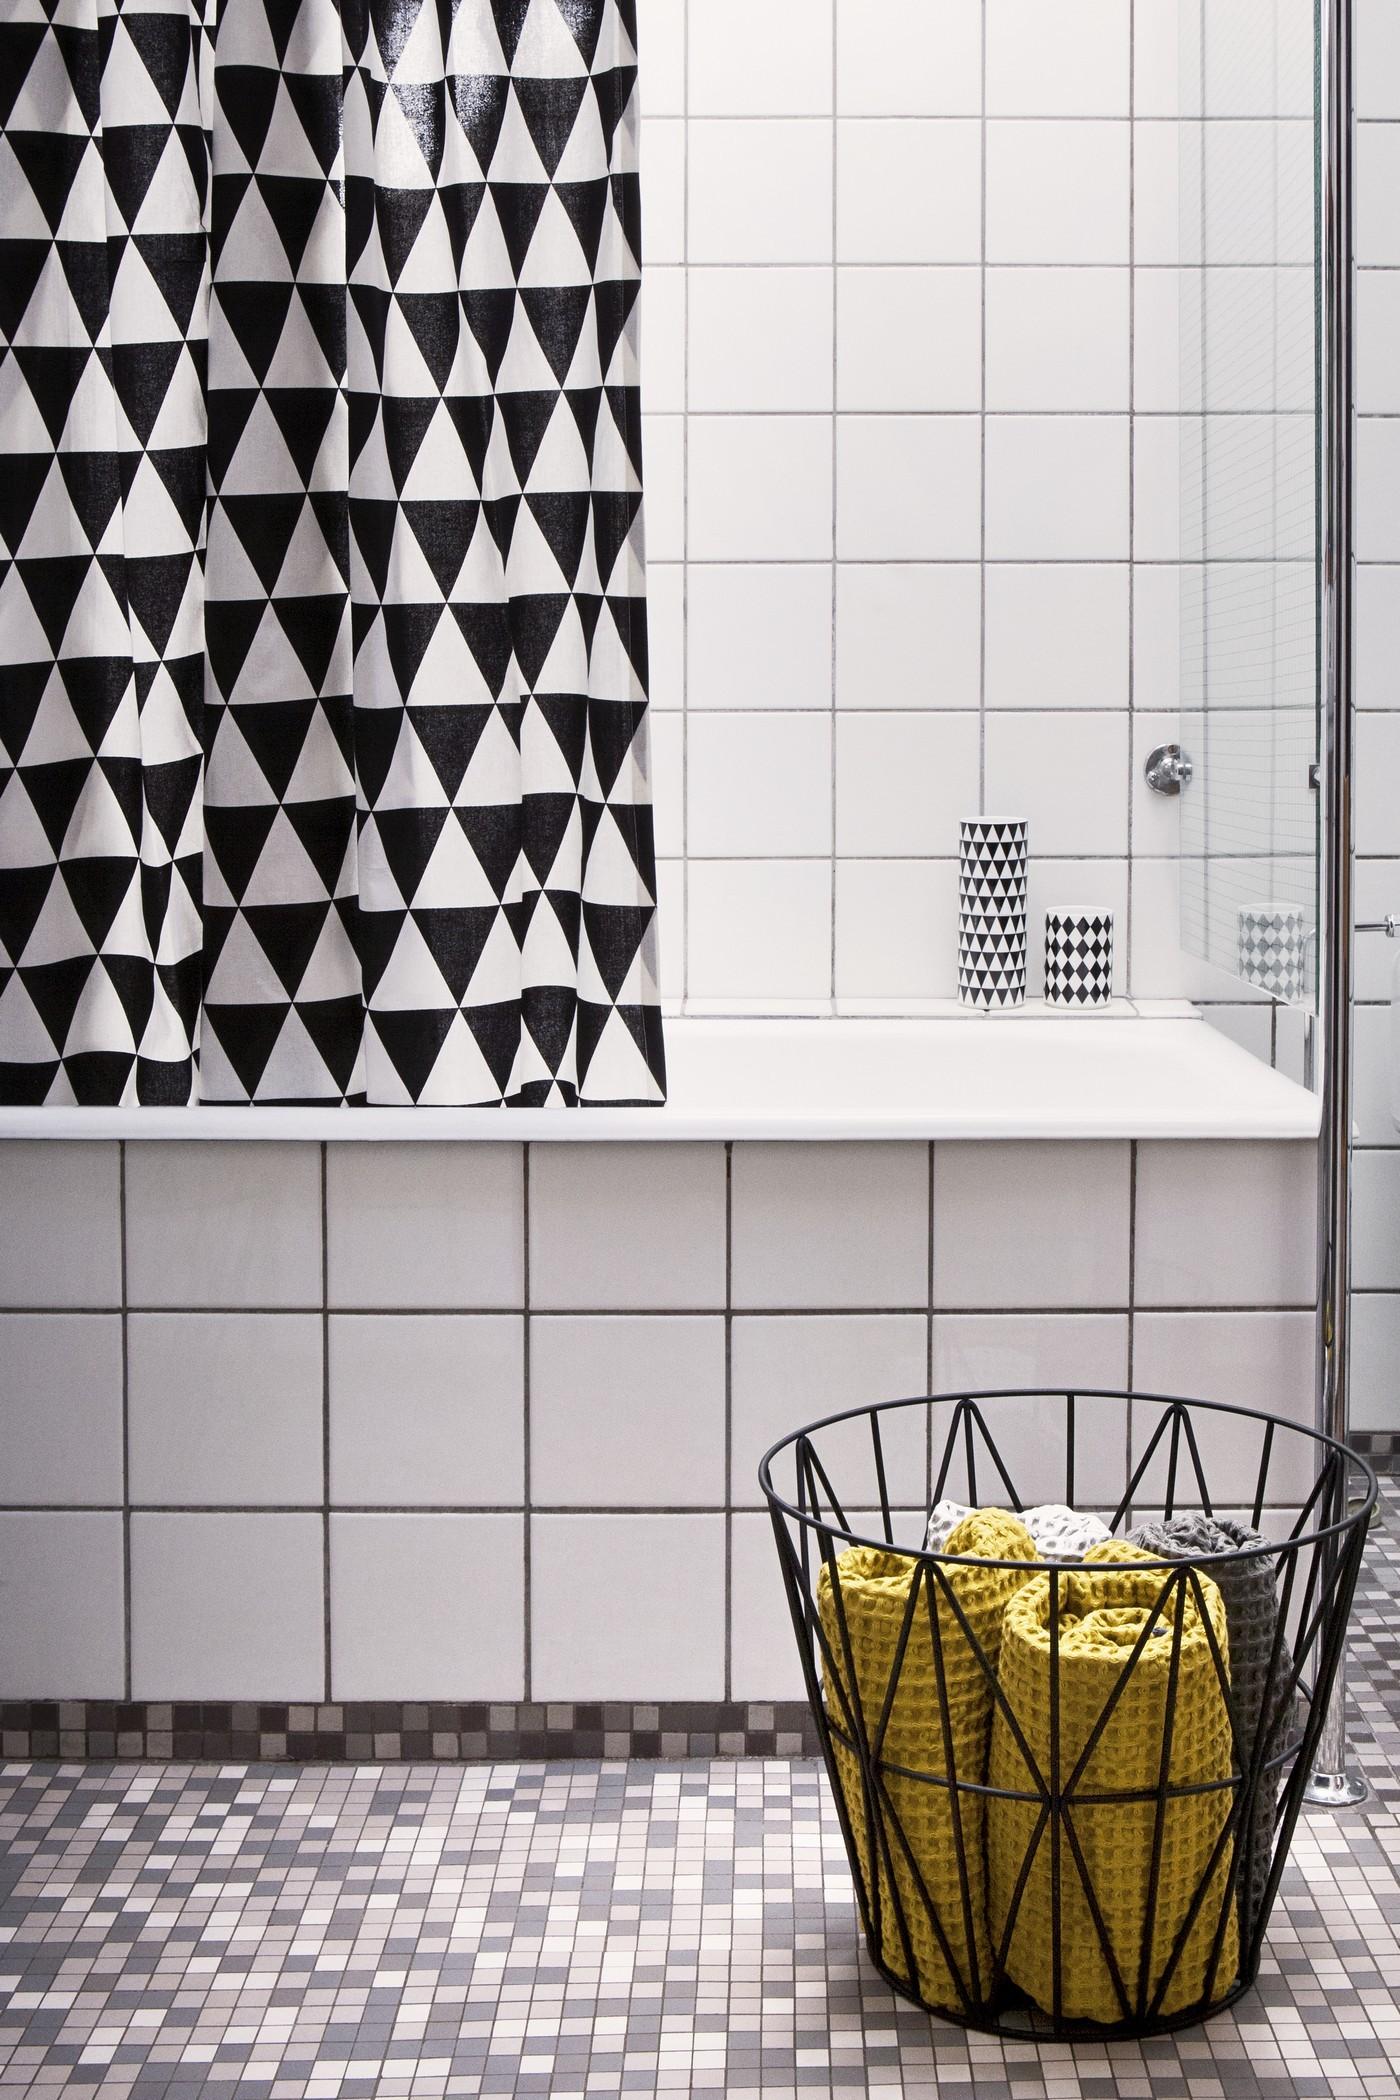 Badezimmer verschönern mit modernen Mustern und Farben #duschvorhang #handtuchhalter #grauerbodenbelag #badezimmereinrichtung ©ferm Living